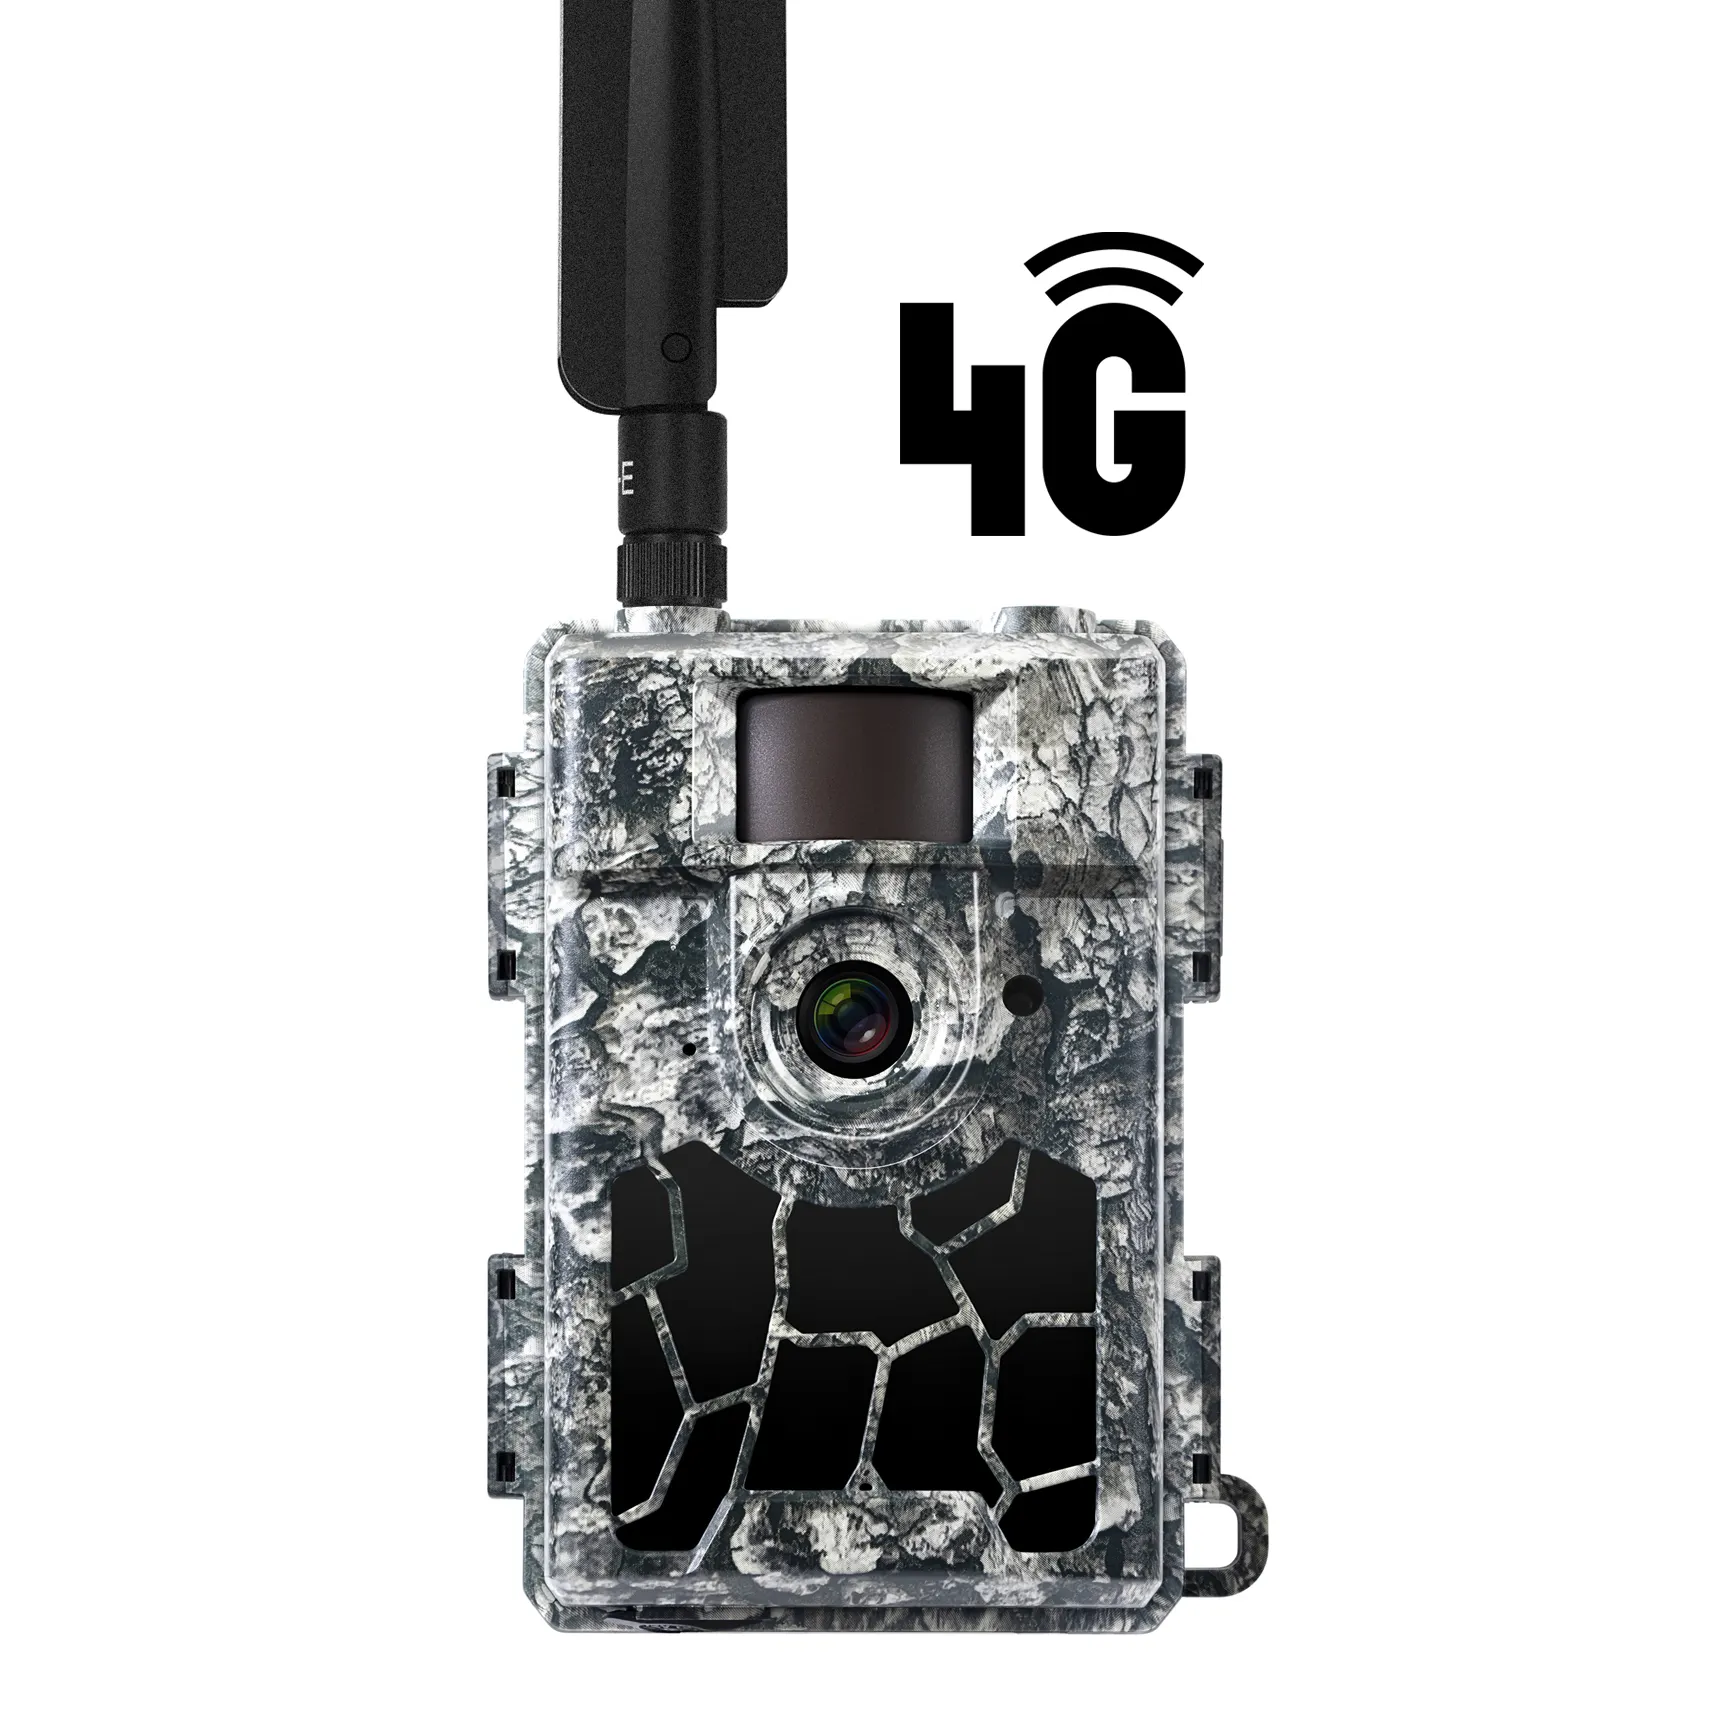 Willfine açık kablosuz 4G lte bulut app güvenlik trail oyunu kameralar hunting avcılık takip kamerası